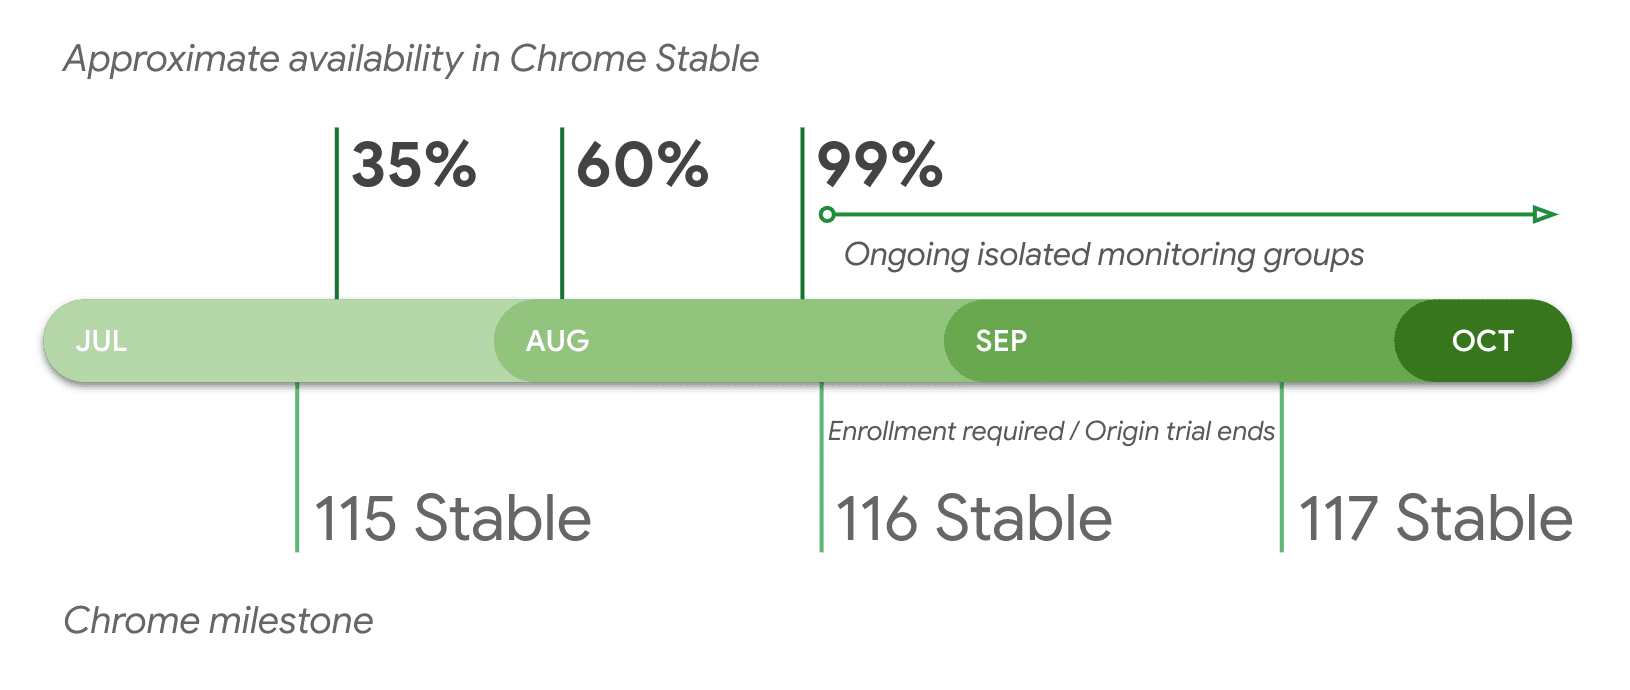 Disponibilité approximative par version dans la version stable de Chrome.